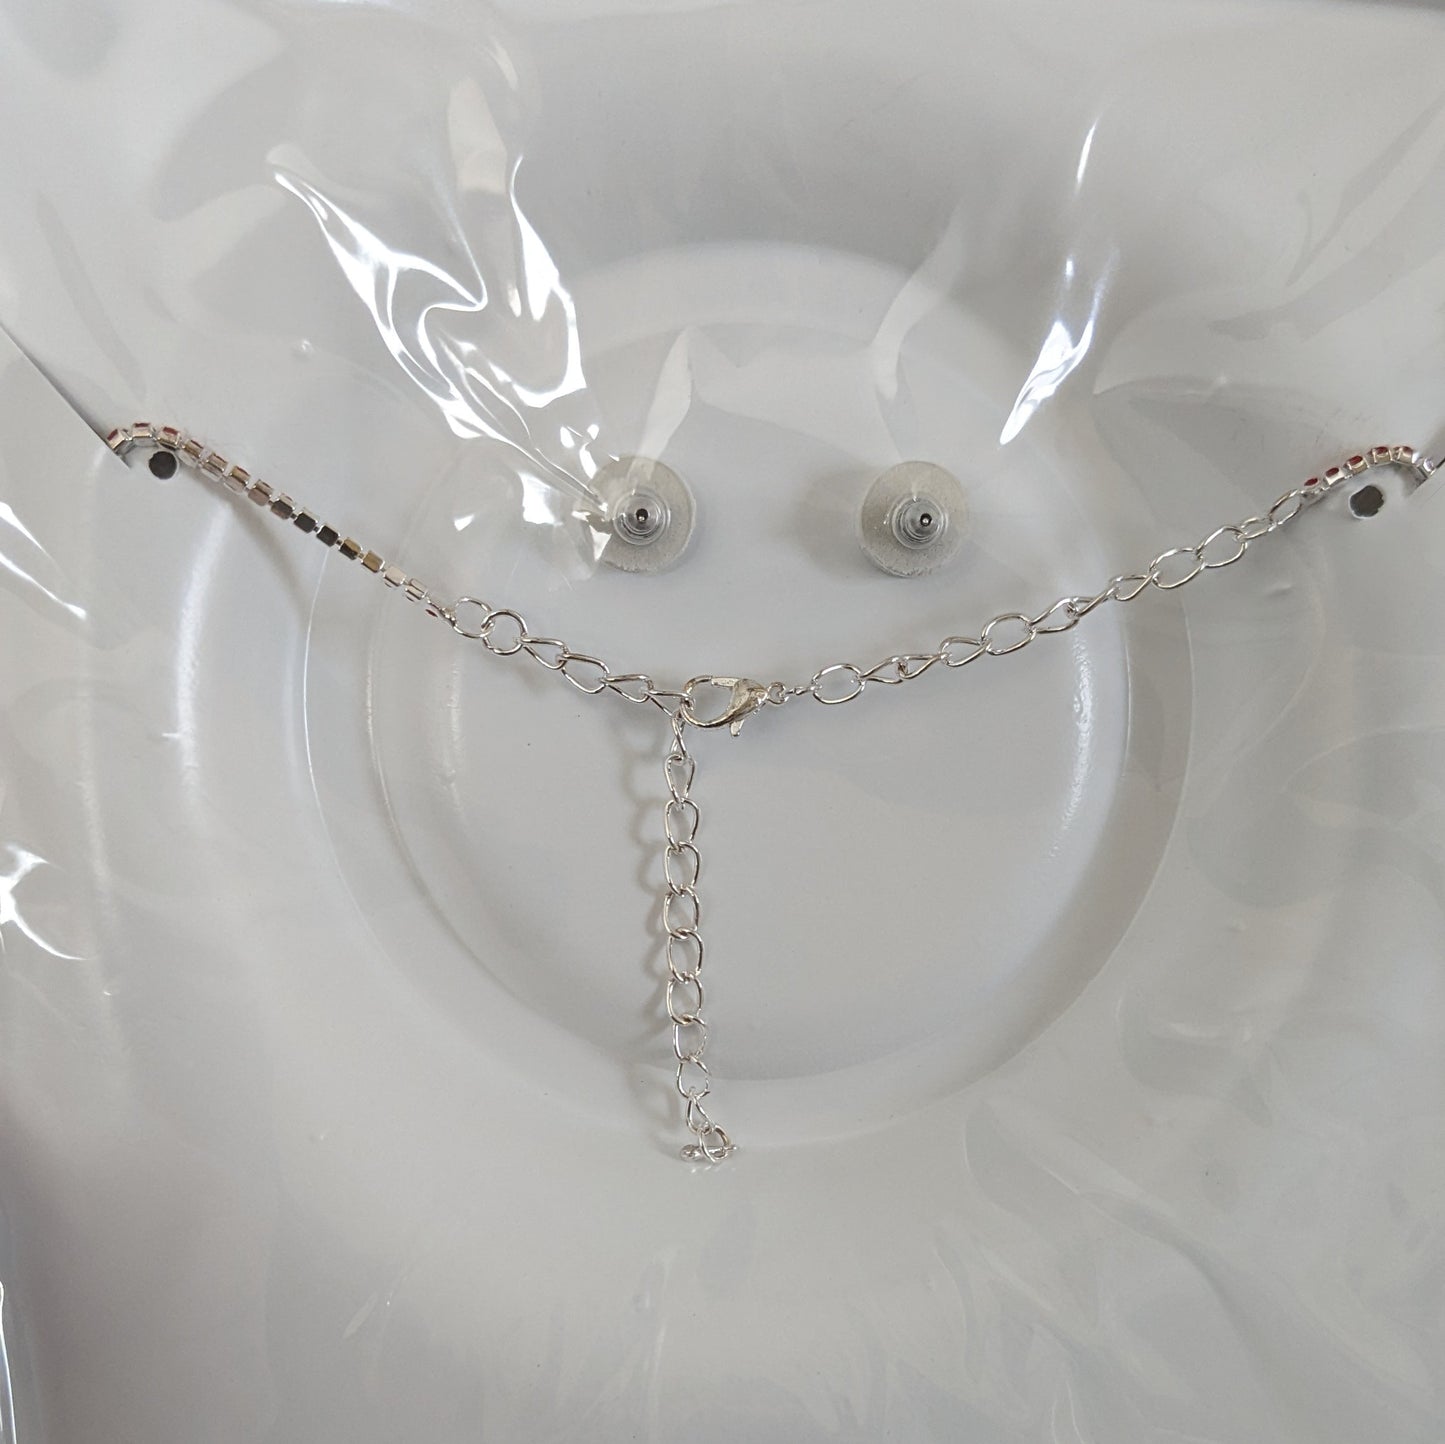 Crystal Gemstone V-Shaped Floral Necklace Set